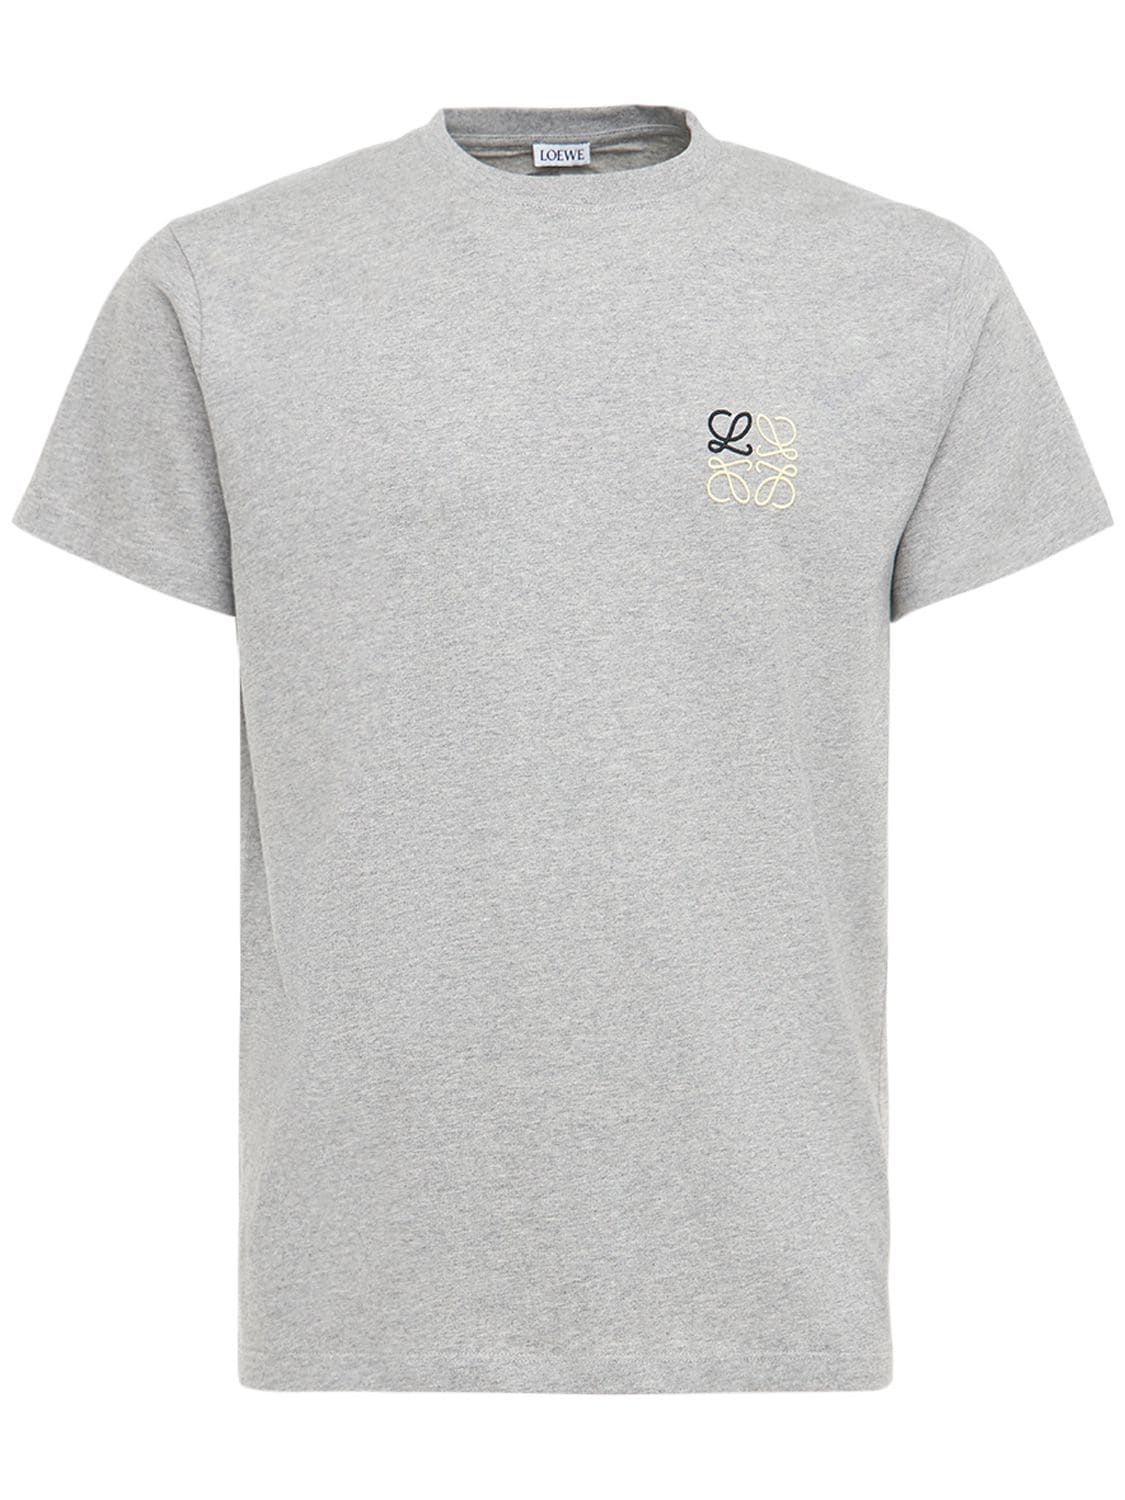 Loewe - Logo embroidery cotton jersey t-shirt - Heather Grey | Luisaviaroma | Luisaviaroma